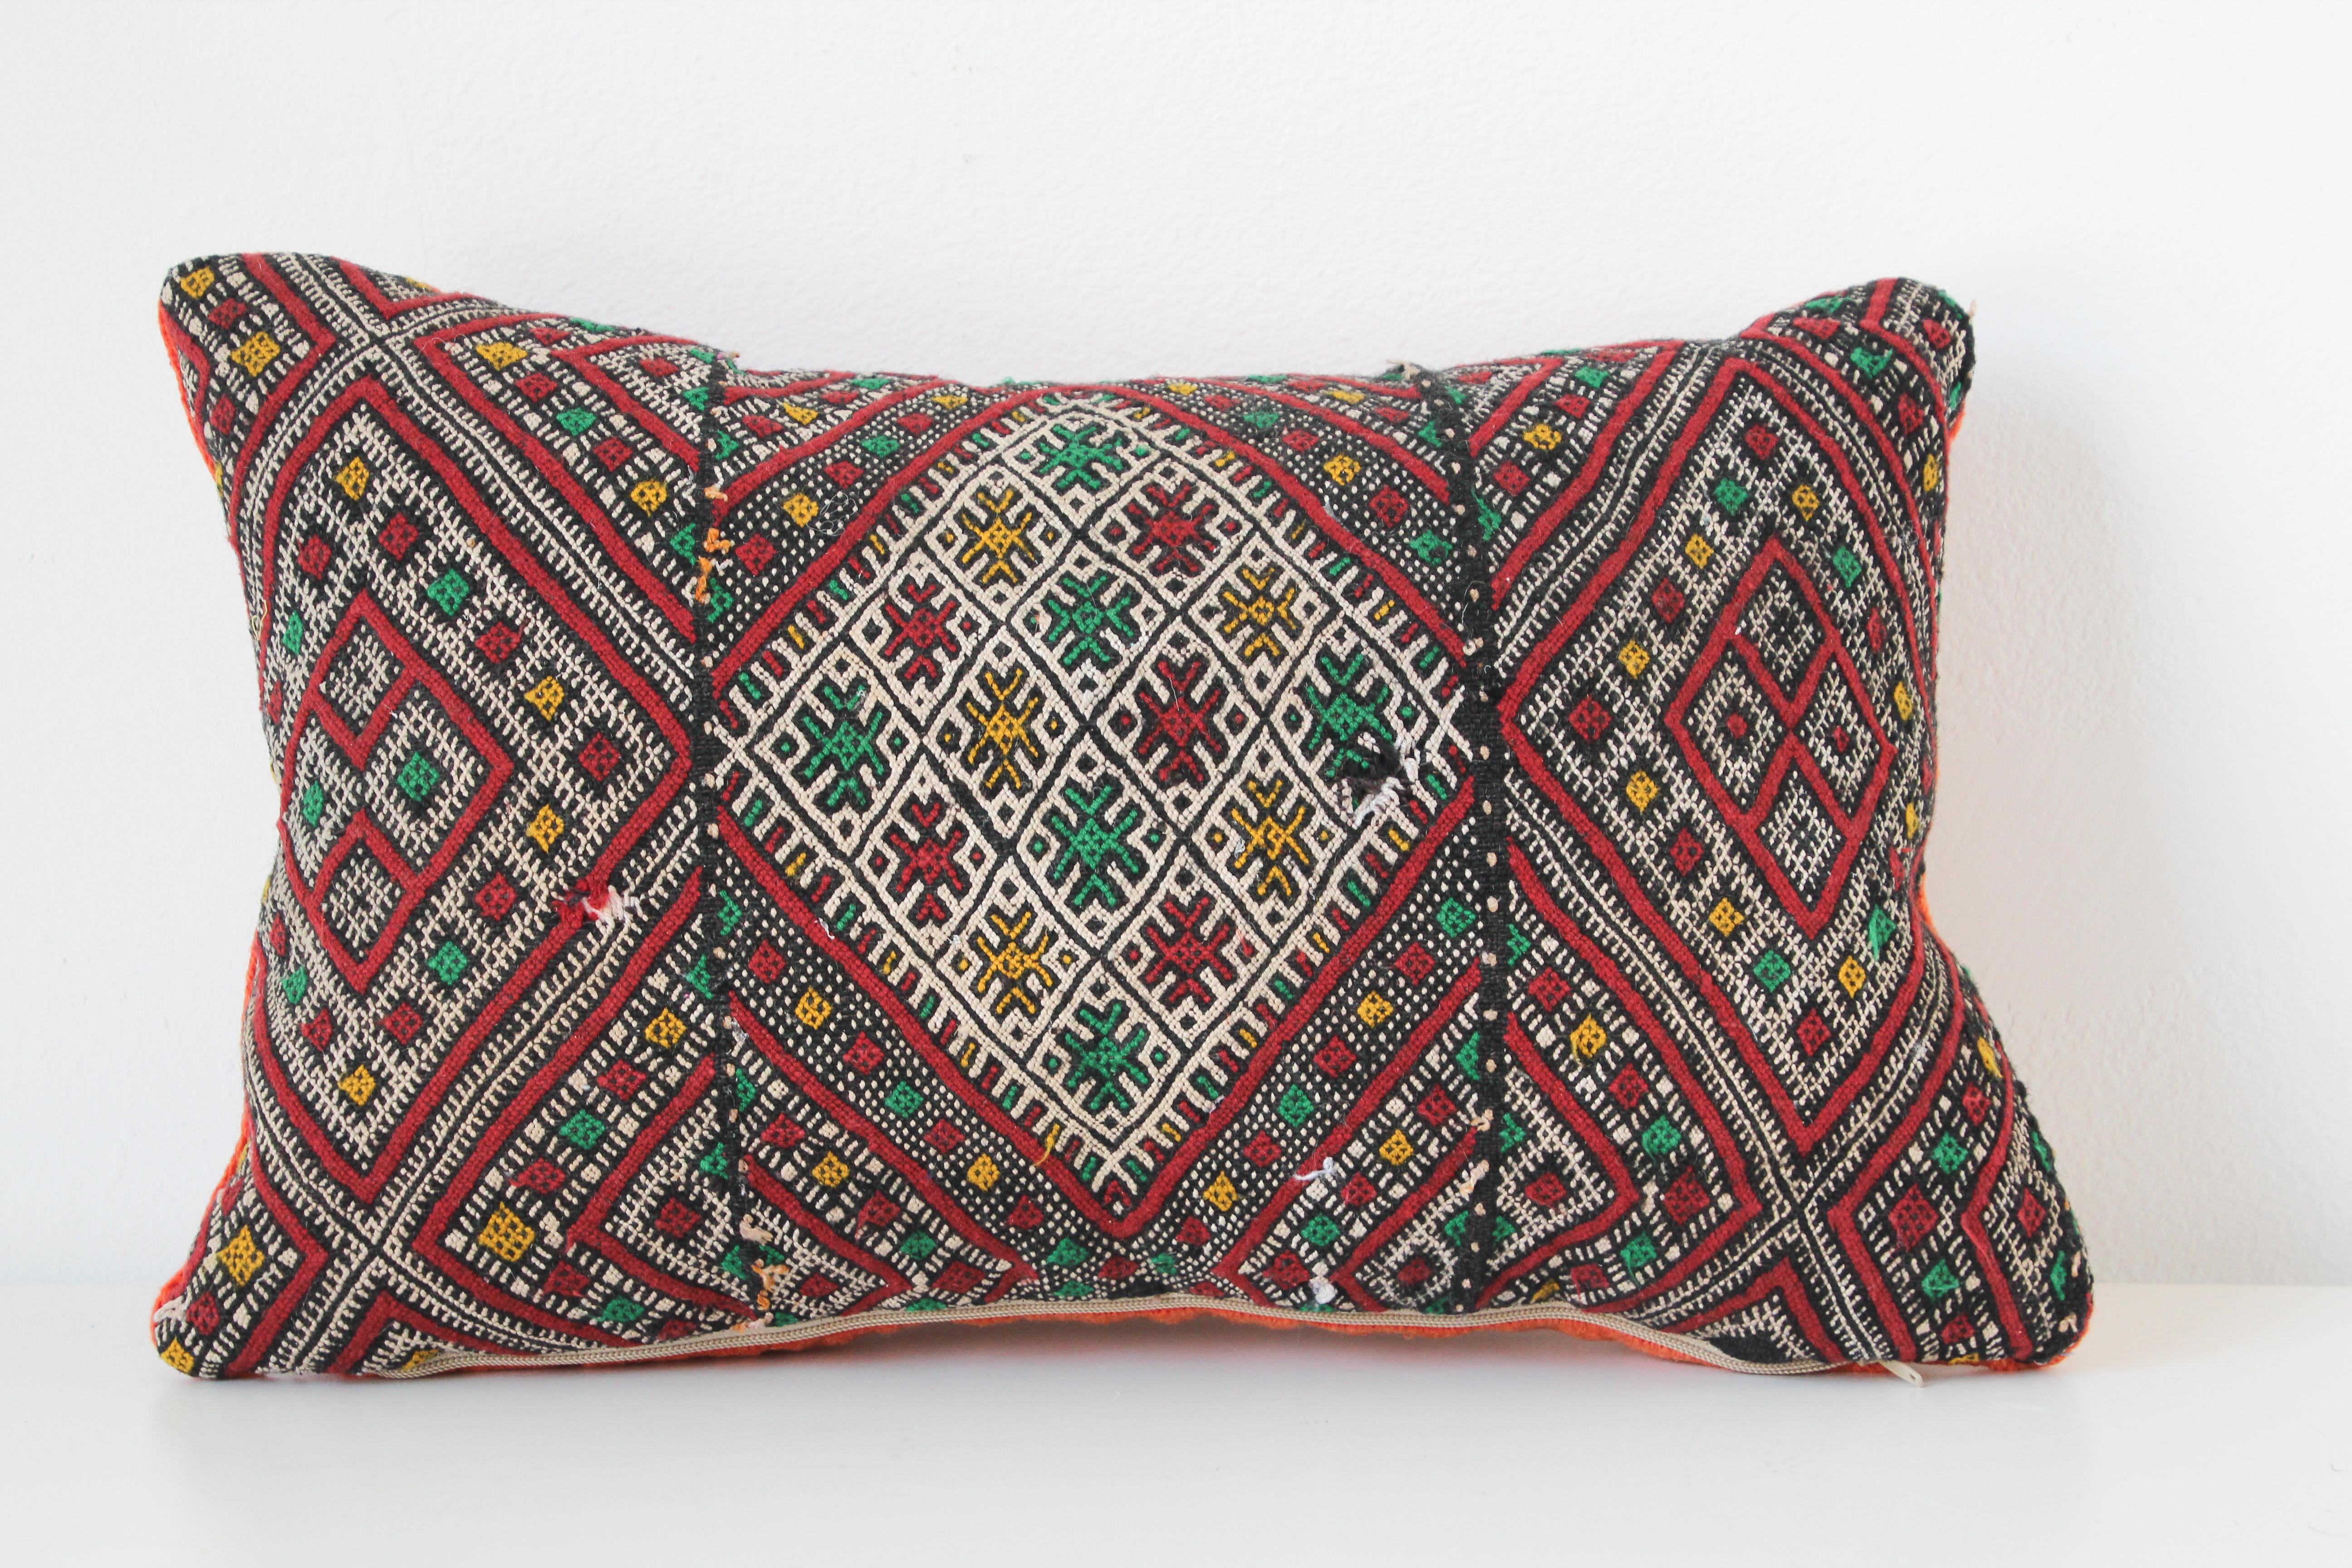 Coussin tribal berbère marocain tissé à la main à partir d'un tapis vintage.
Le recto et le verso sont fabriqués à partir d'un tapis différent, le recto étant plus élaboré et le verso plus simple.
Motifs géométriques tribaux africains en rouge,